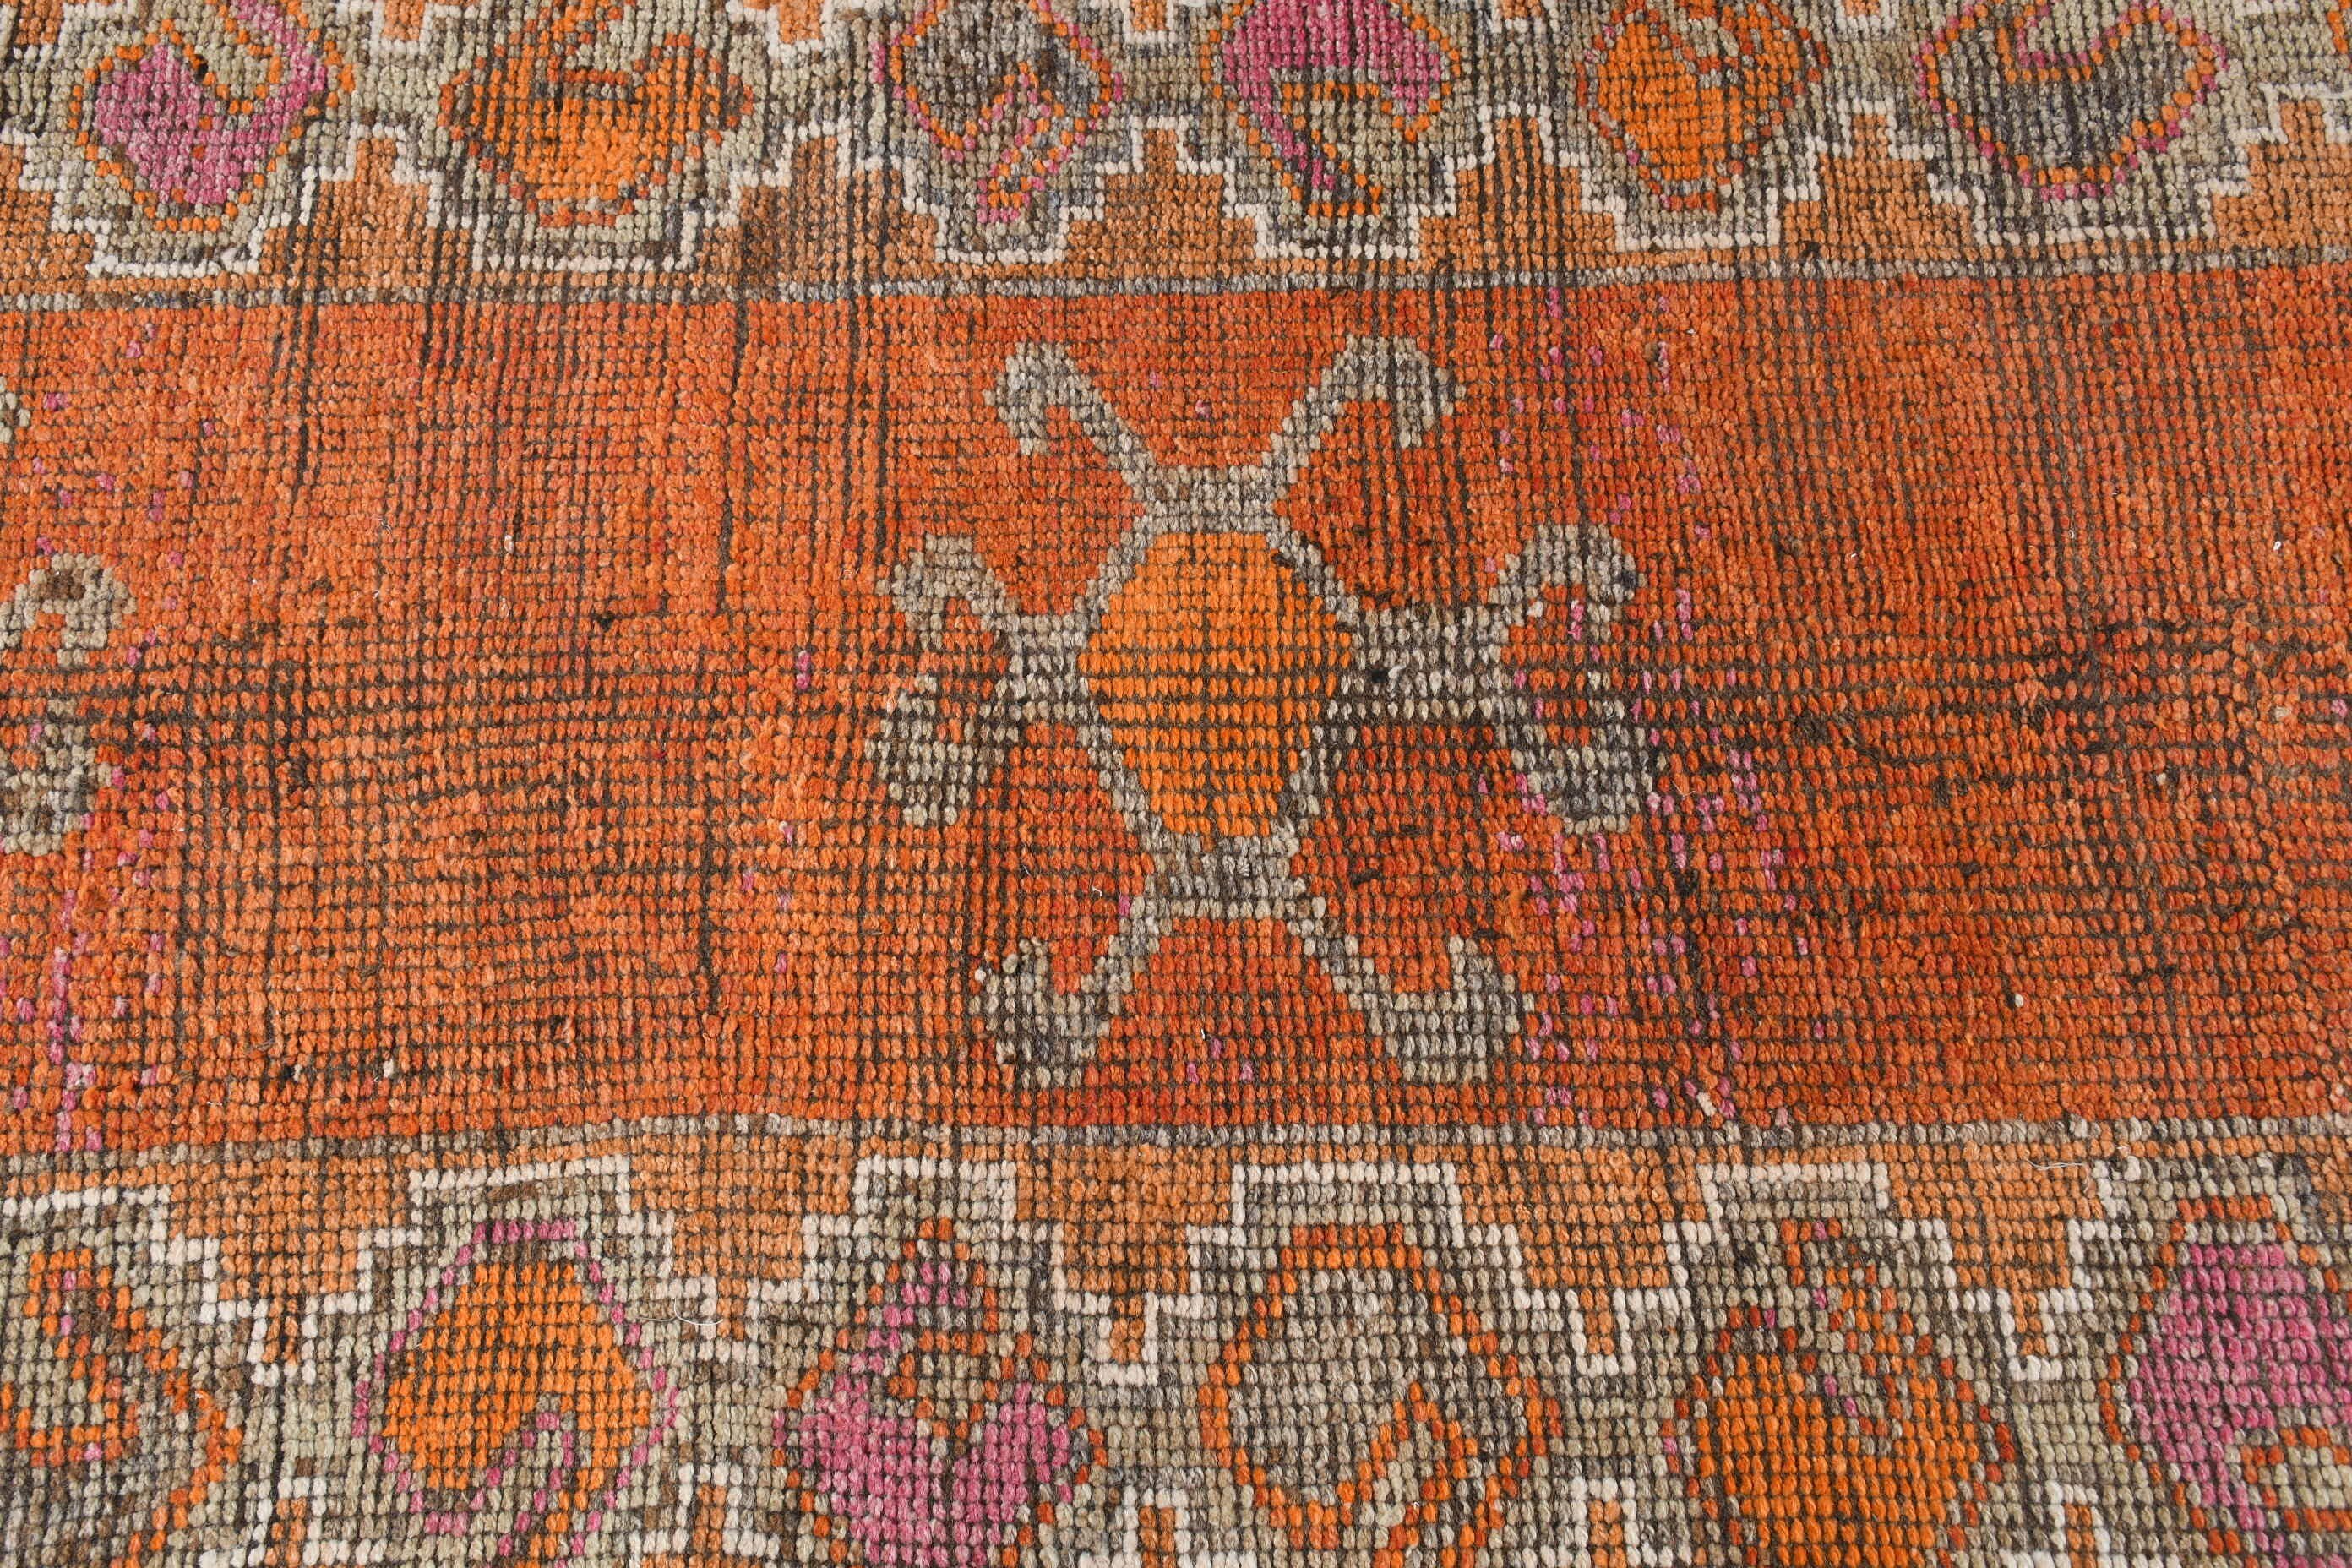 Vintage Rugs, Kitchen Rug, Moroccan Rugs, Corridor Rug, 3x10.9 ft Runner Rug, Turkish Rugs, Wool Rug, Rugs for Runner, Orange Wool Rugs